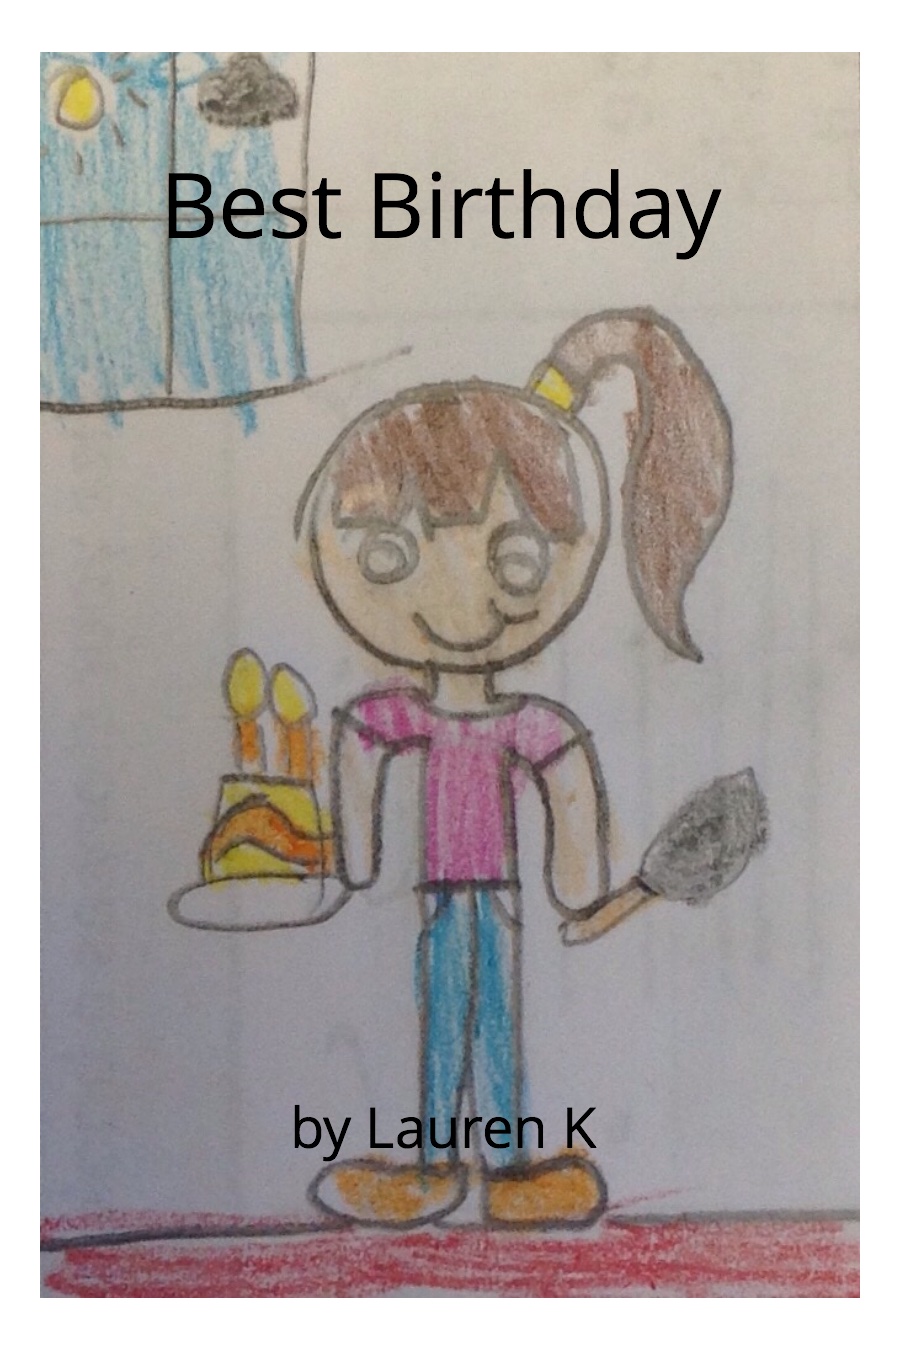 Best Birthday by Lauren K